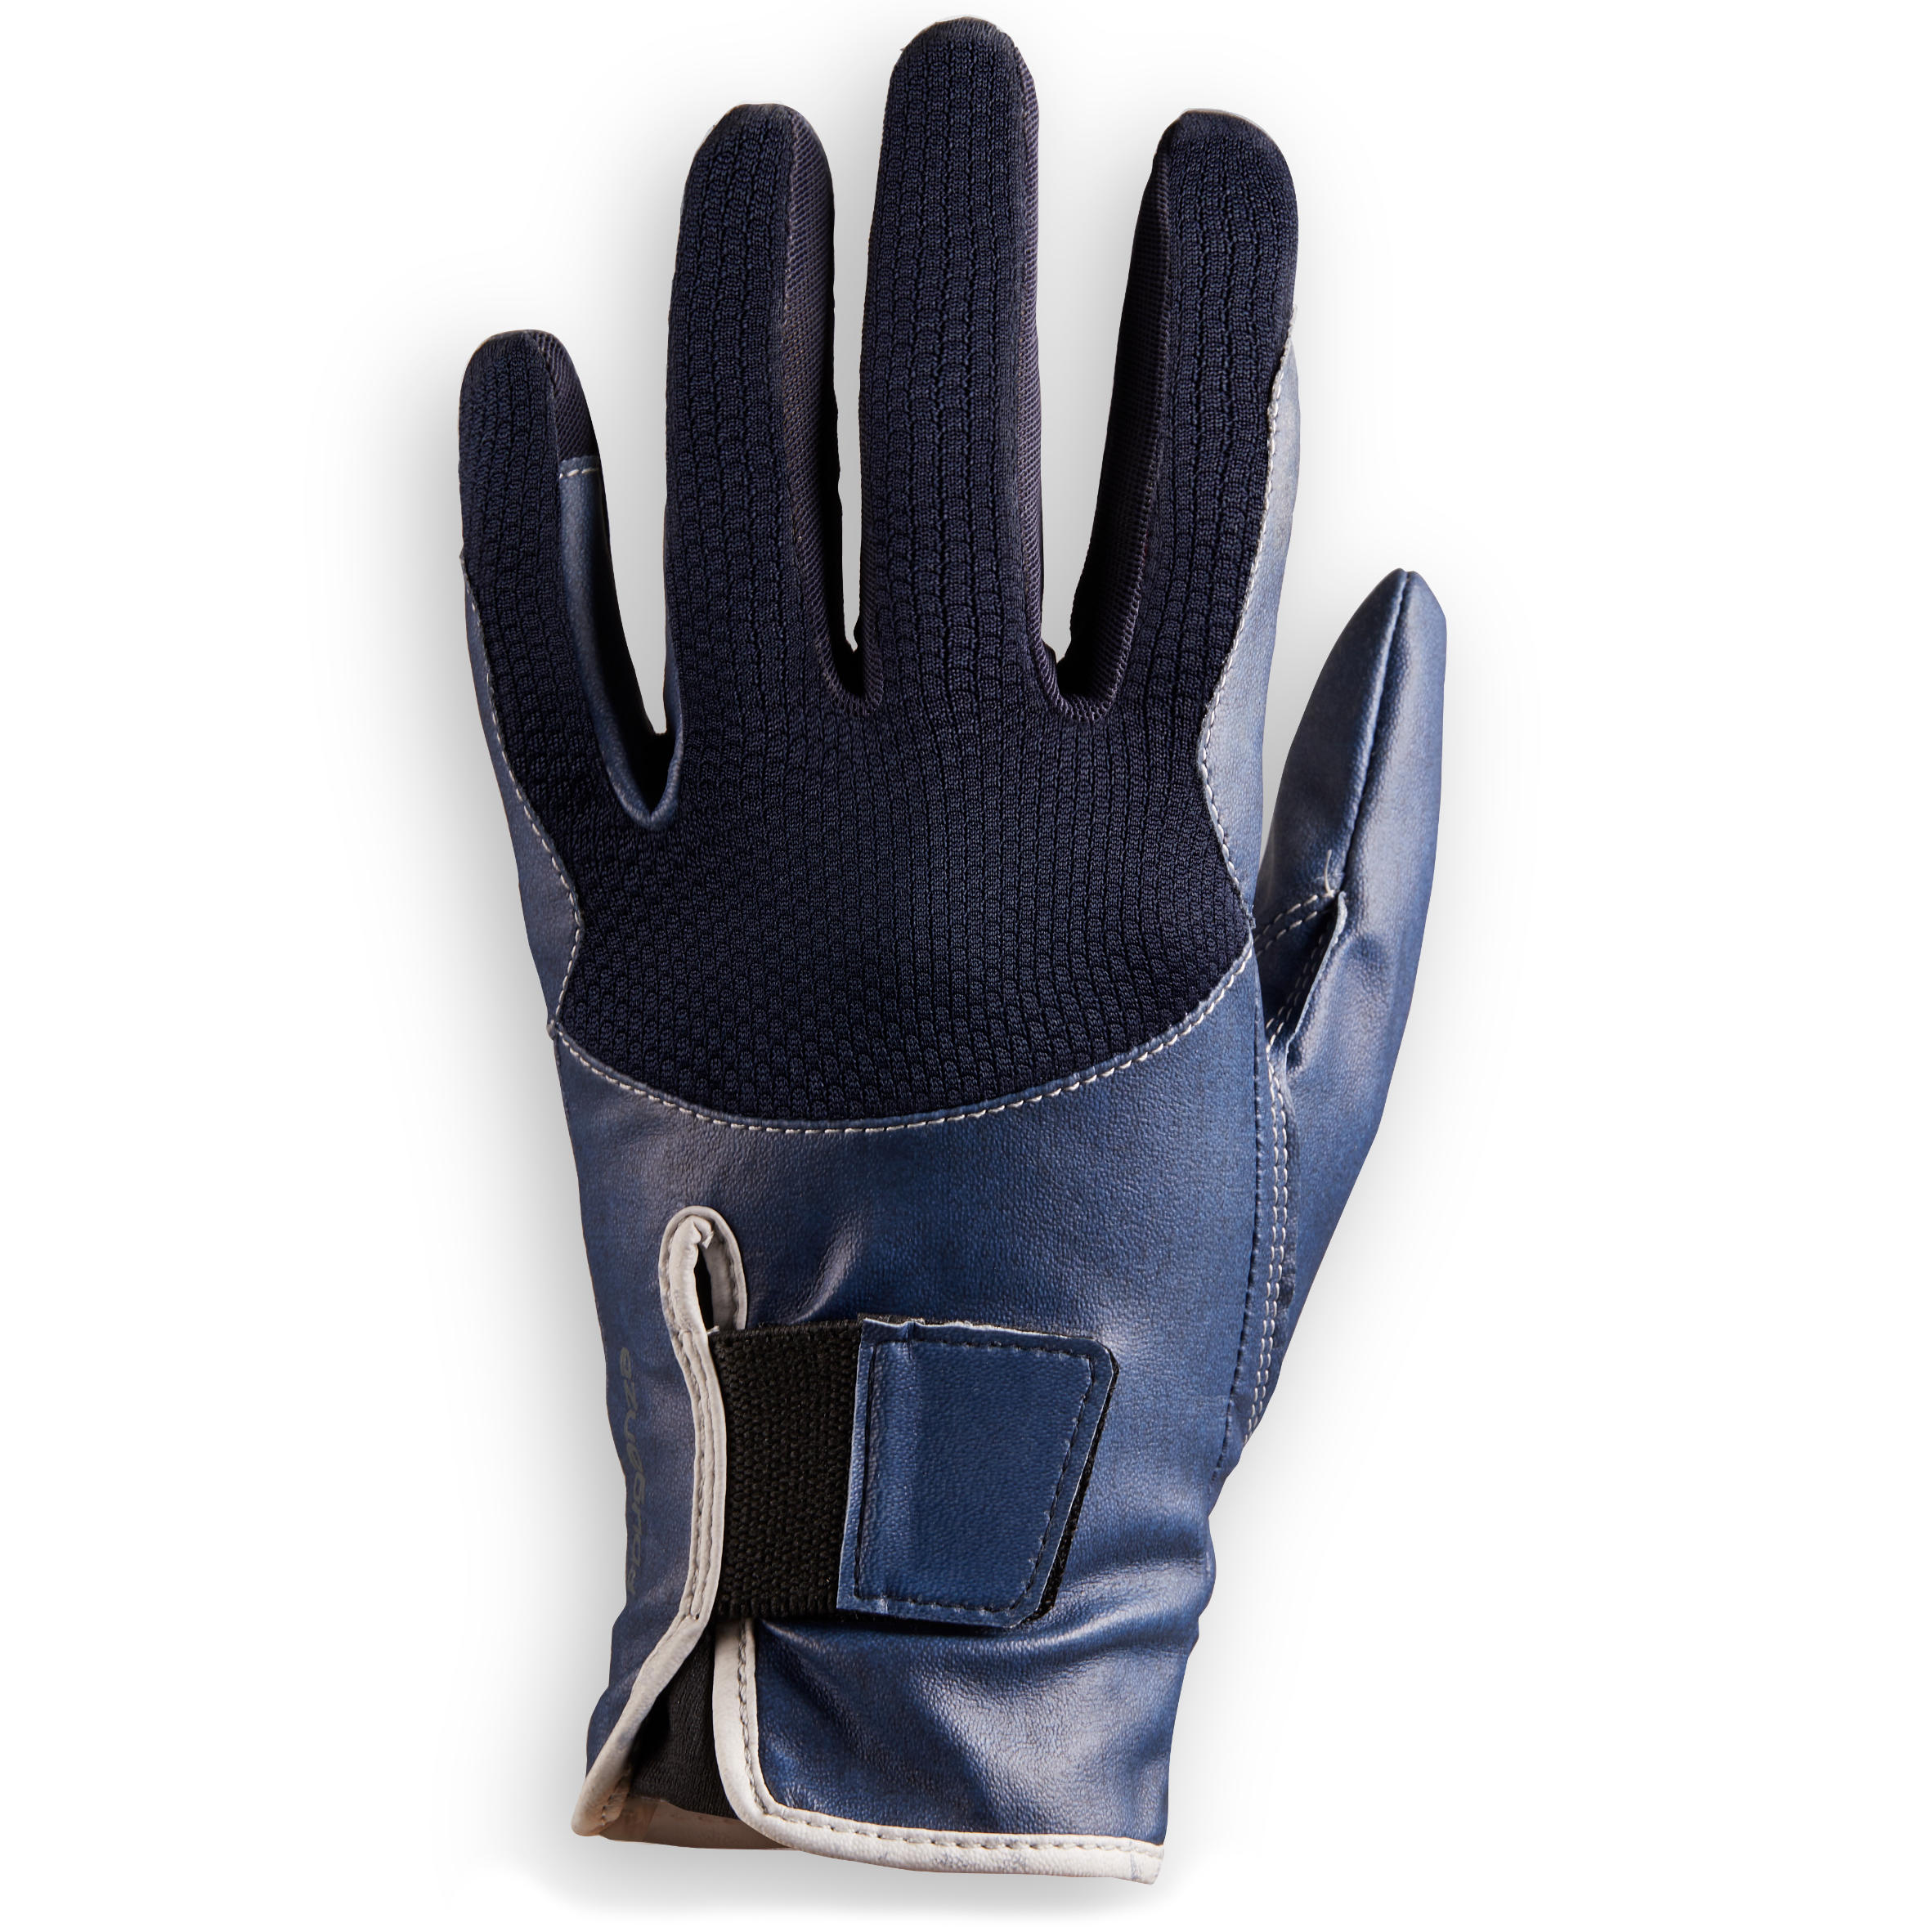 gants équitation enfant 560 marine et bleu - fouganza